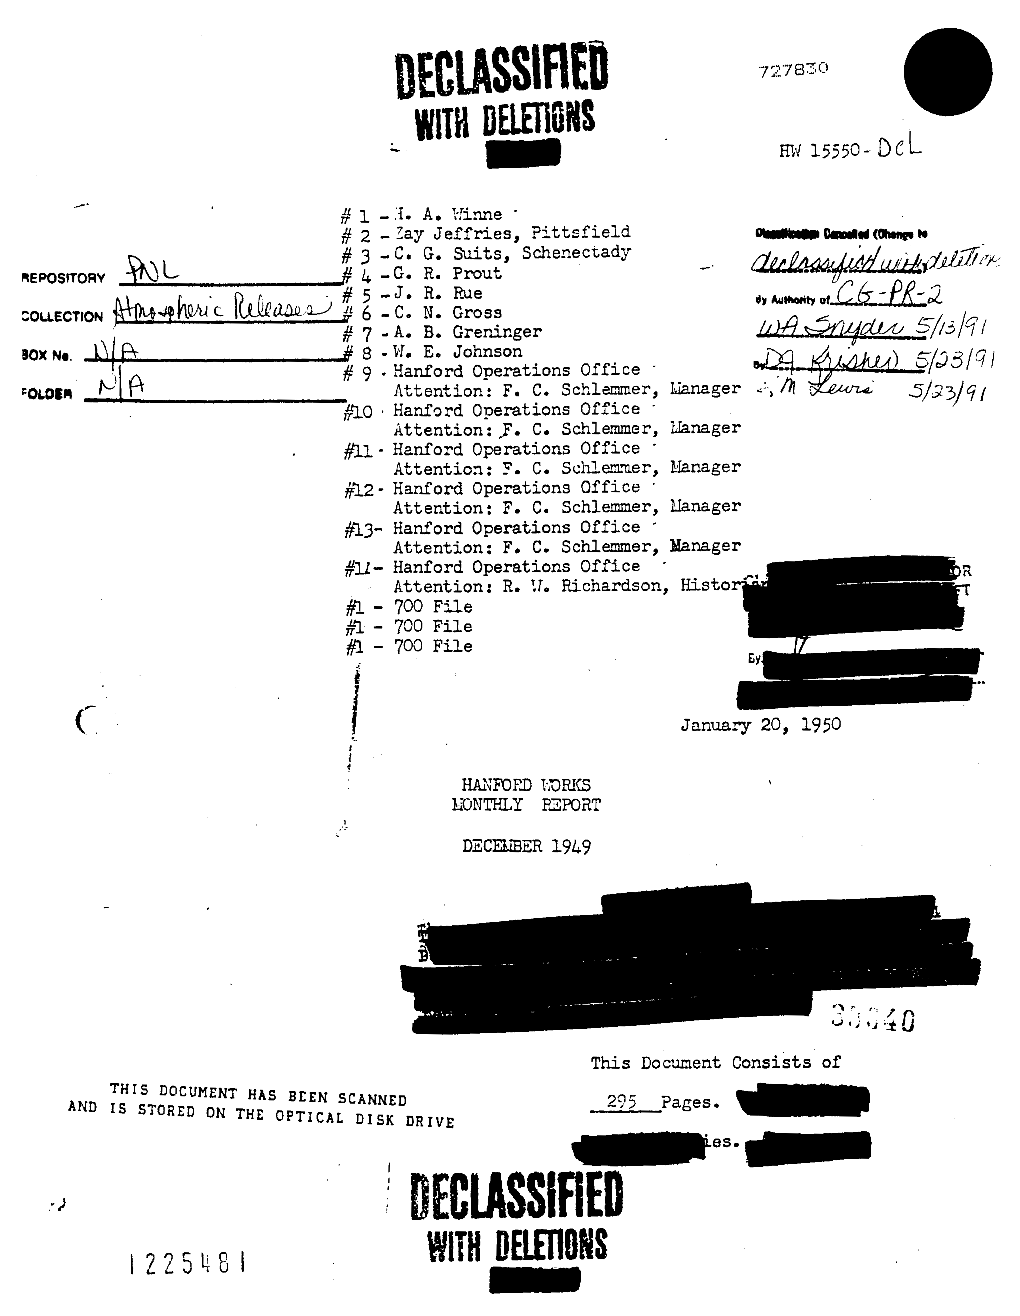 L225ke I DECLASSIFIED H?I 15559- Dne Tam Ofsmcs January 20, 1950